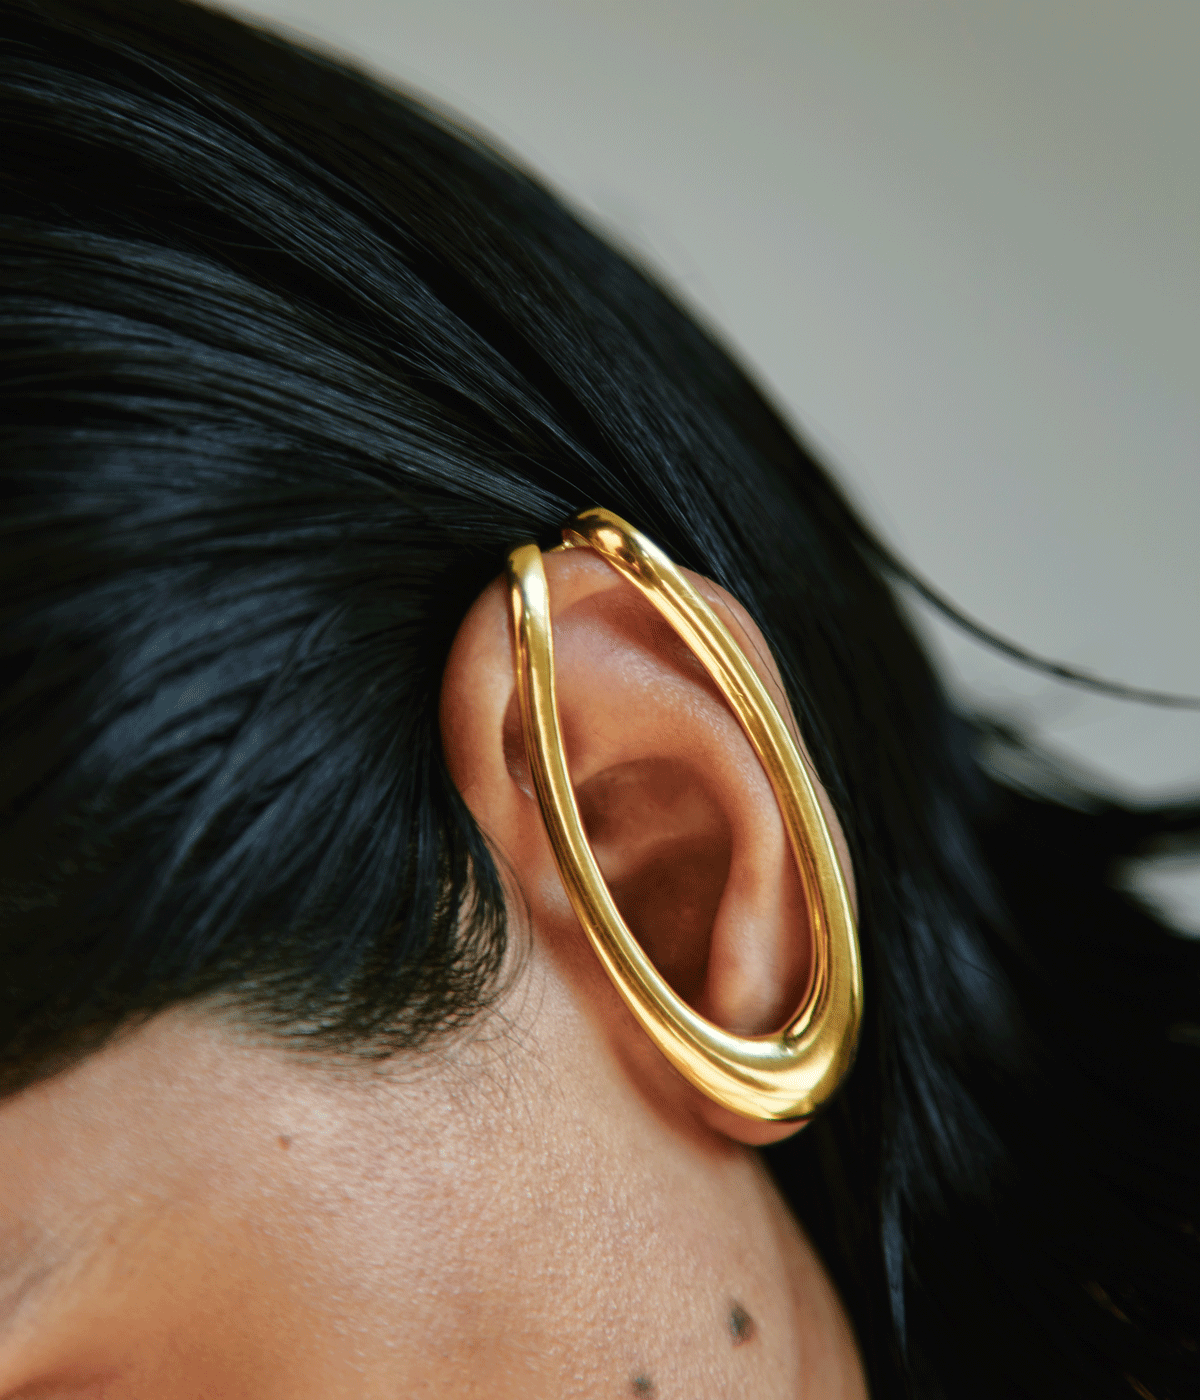 woman wearing gold hooped earring over ear